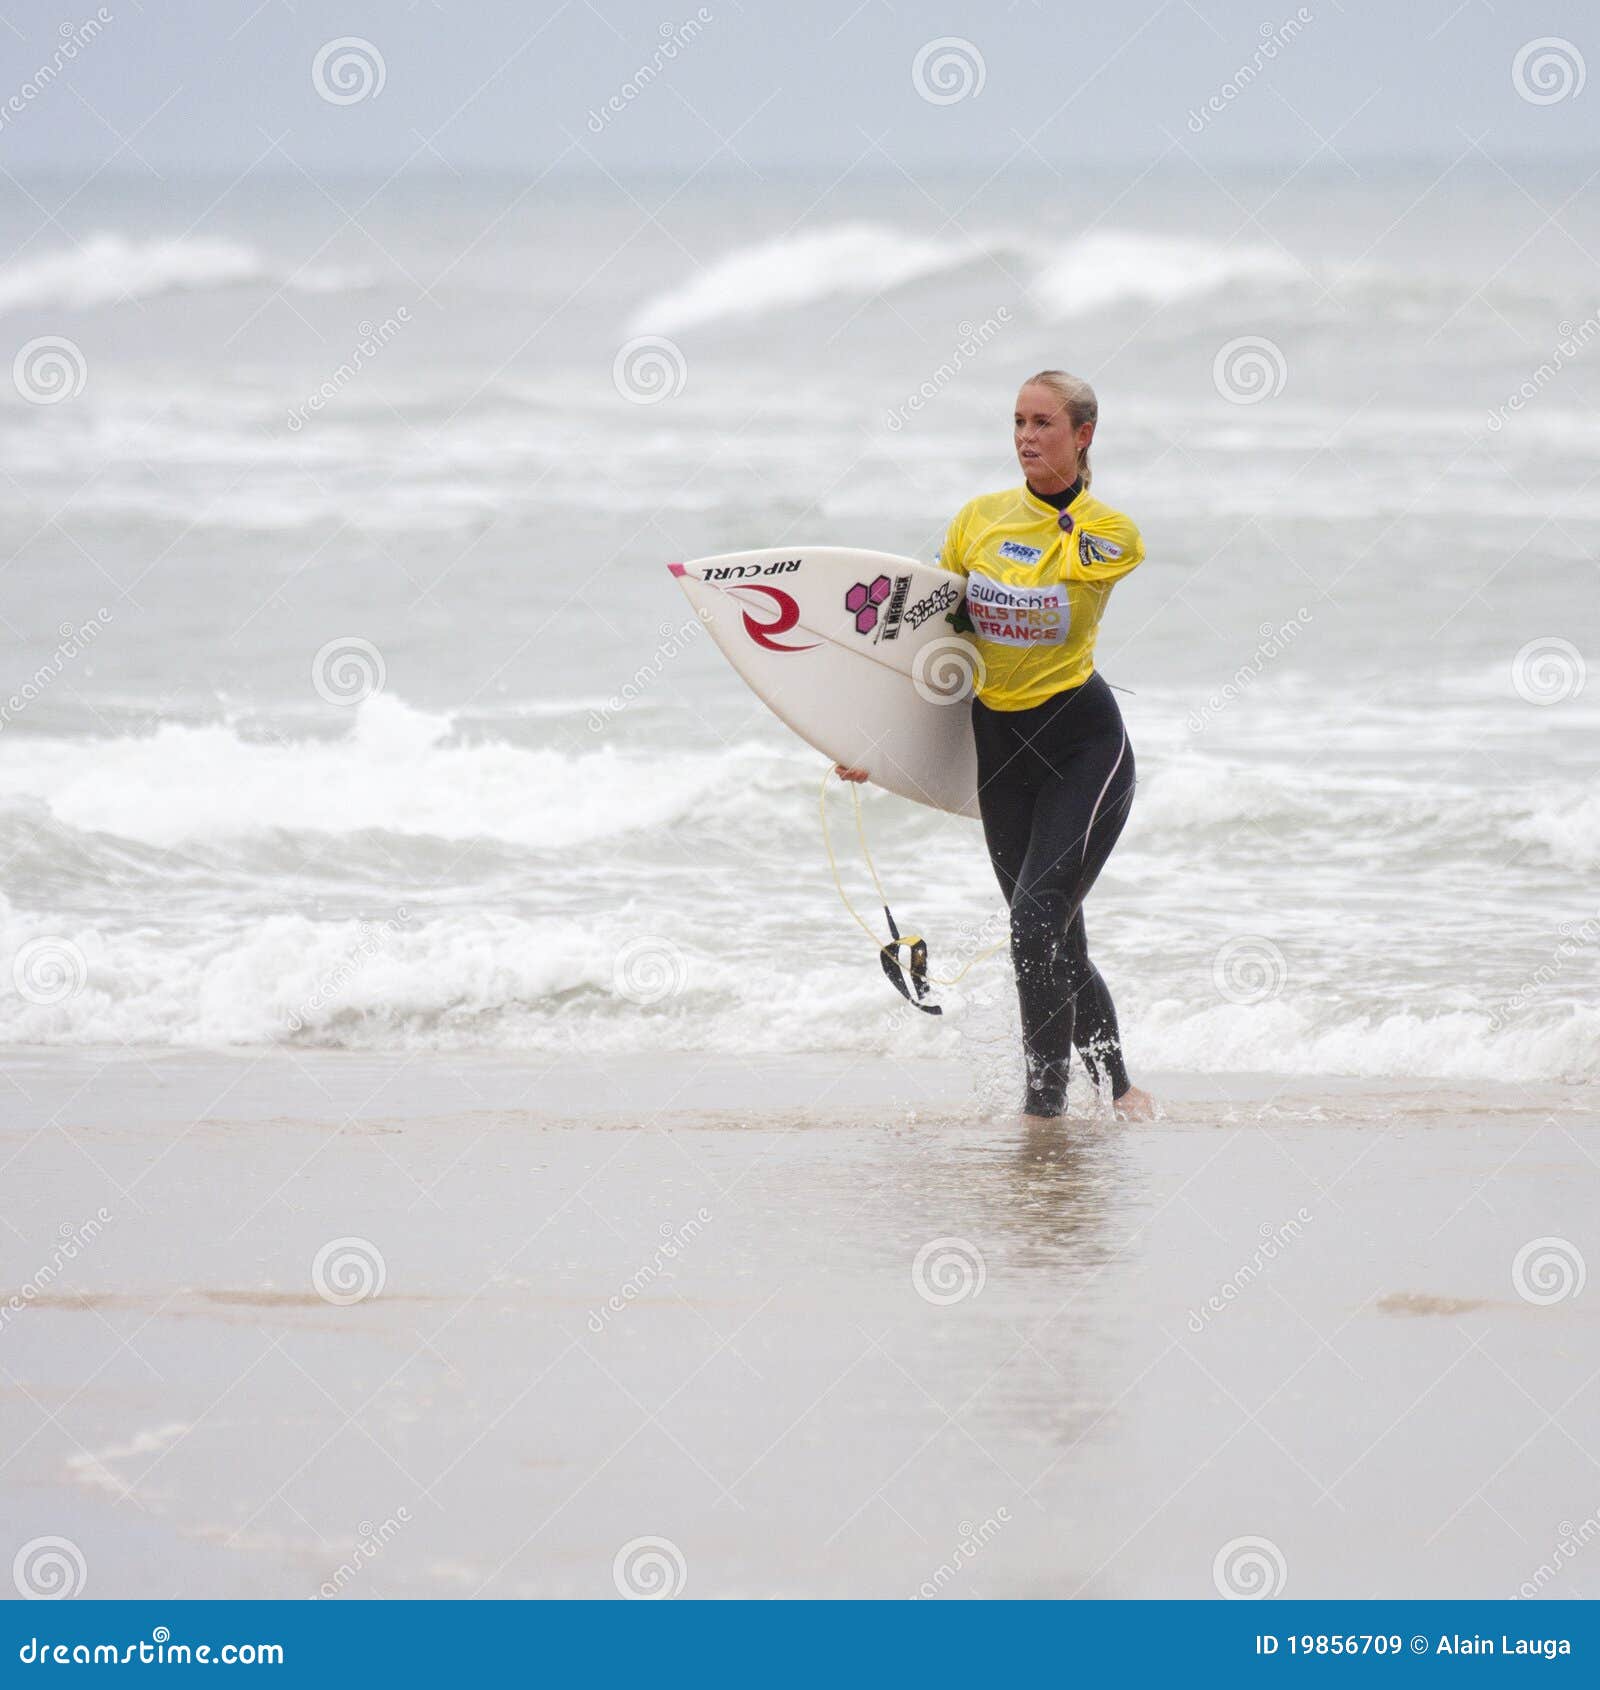 Of hamilton photos bethany Surfer Loses